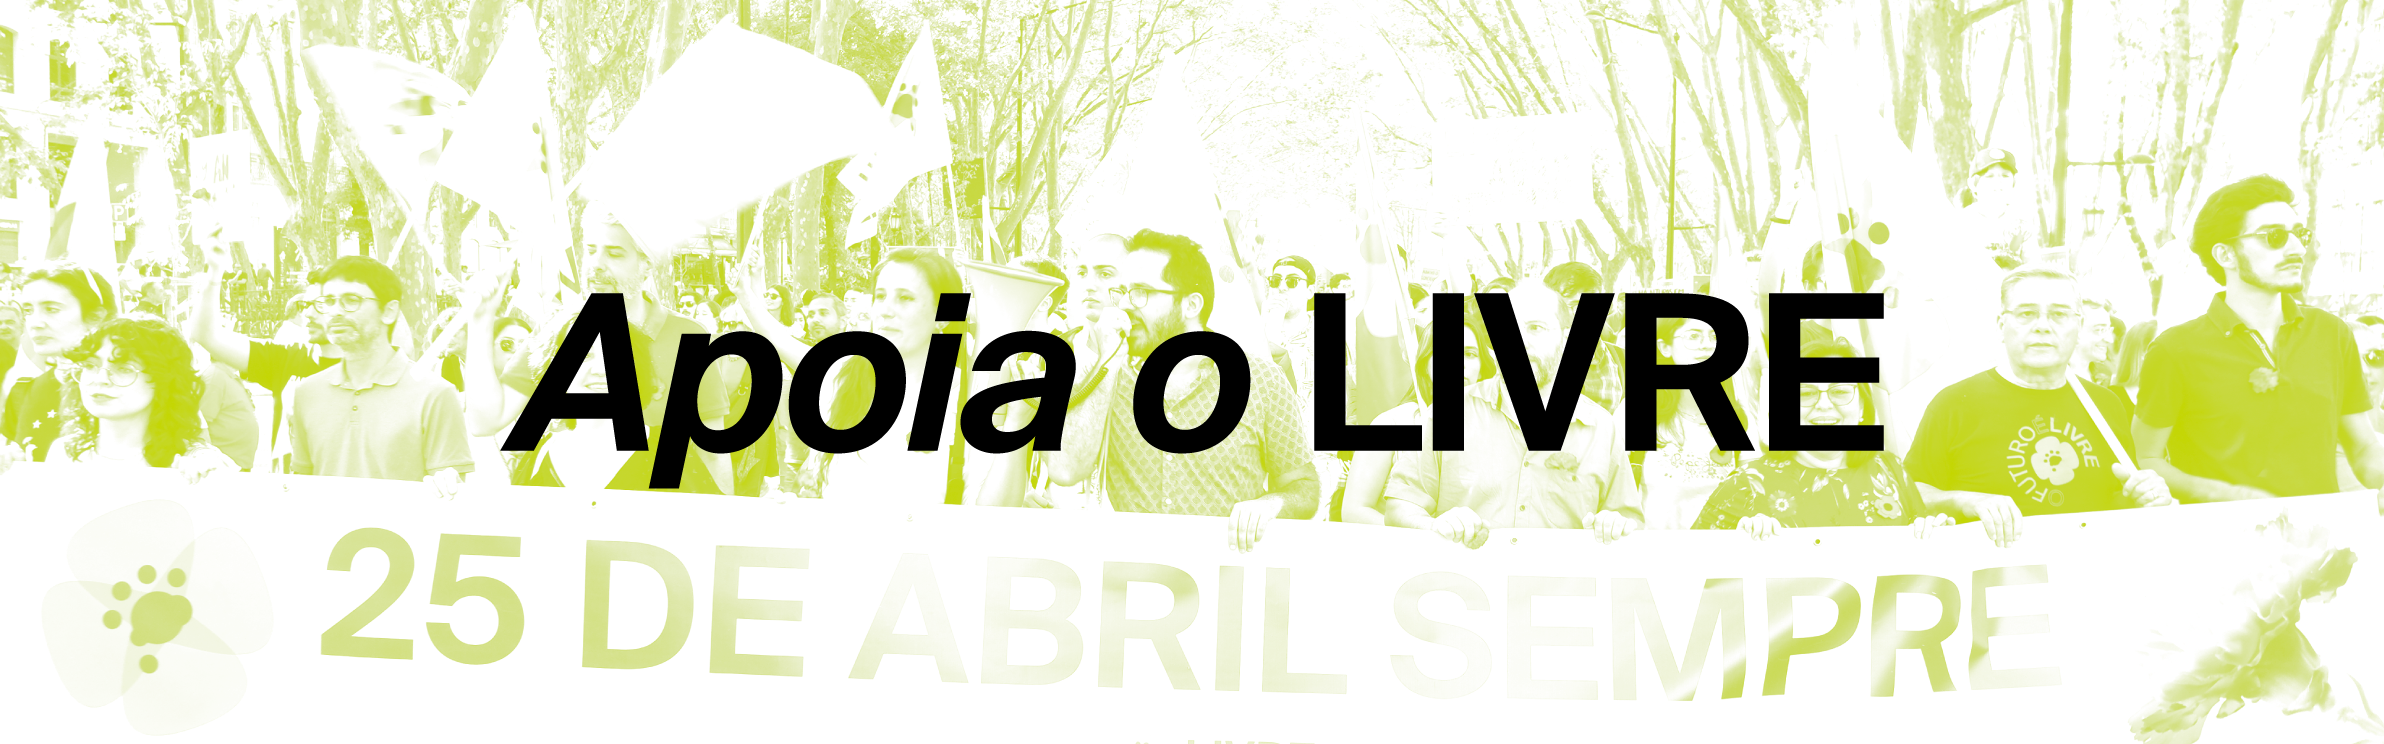 Uma mancha em duotone verde e branco de bandeiras do LIVRE a serem agitadas. No título lê-se “Apoia o LIVRE”, em preto.